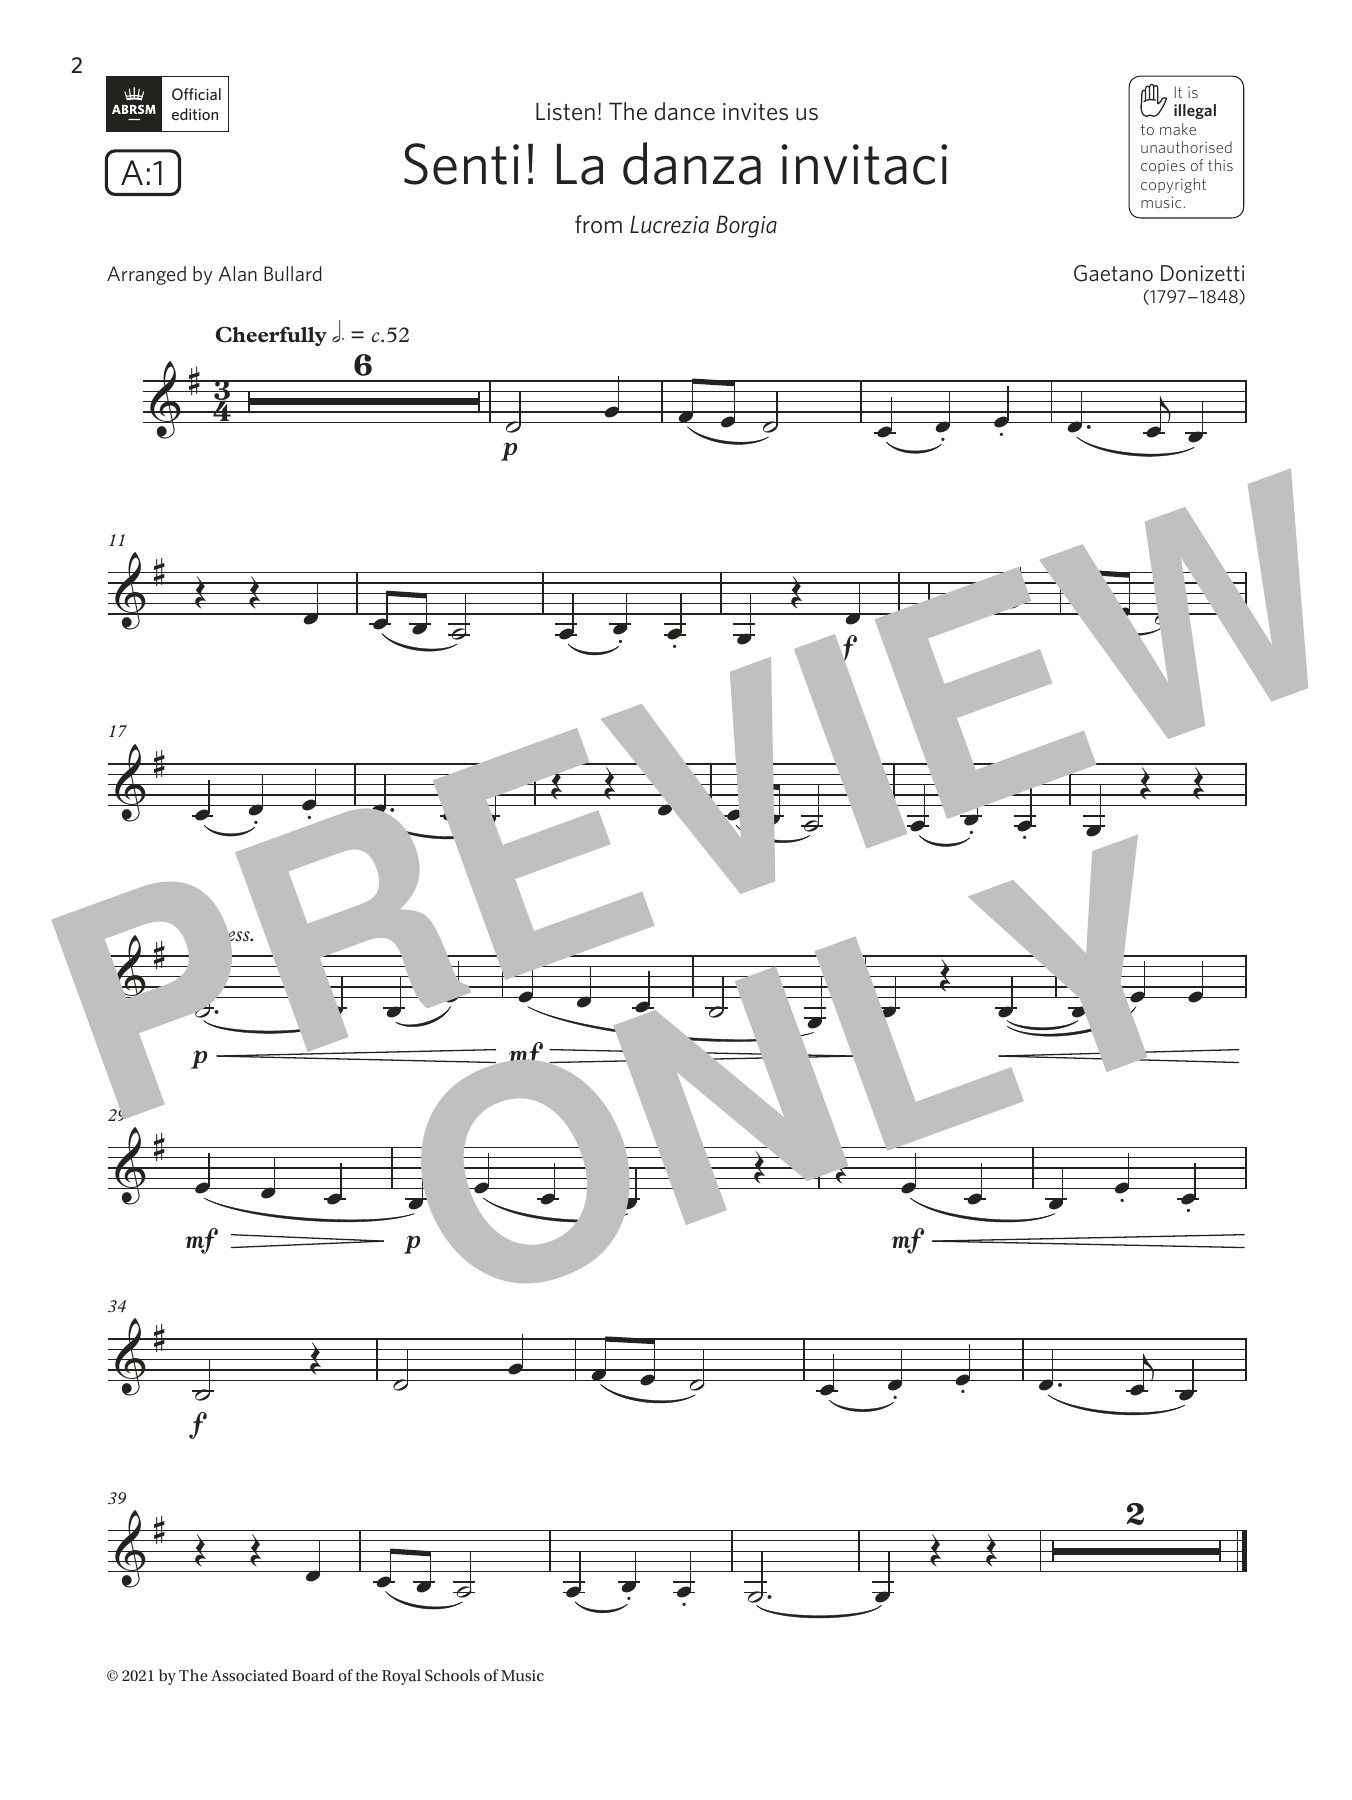 Download Gaetano Donizetti Senti! La danza invitaci (Grade 1 List Sheet Music